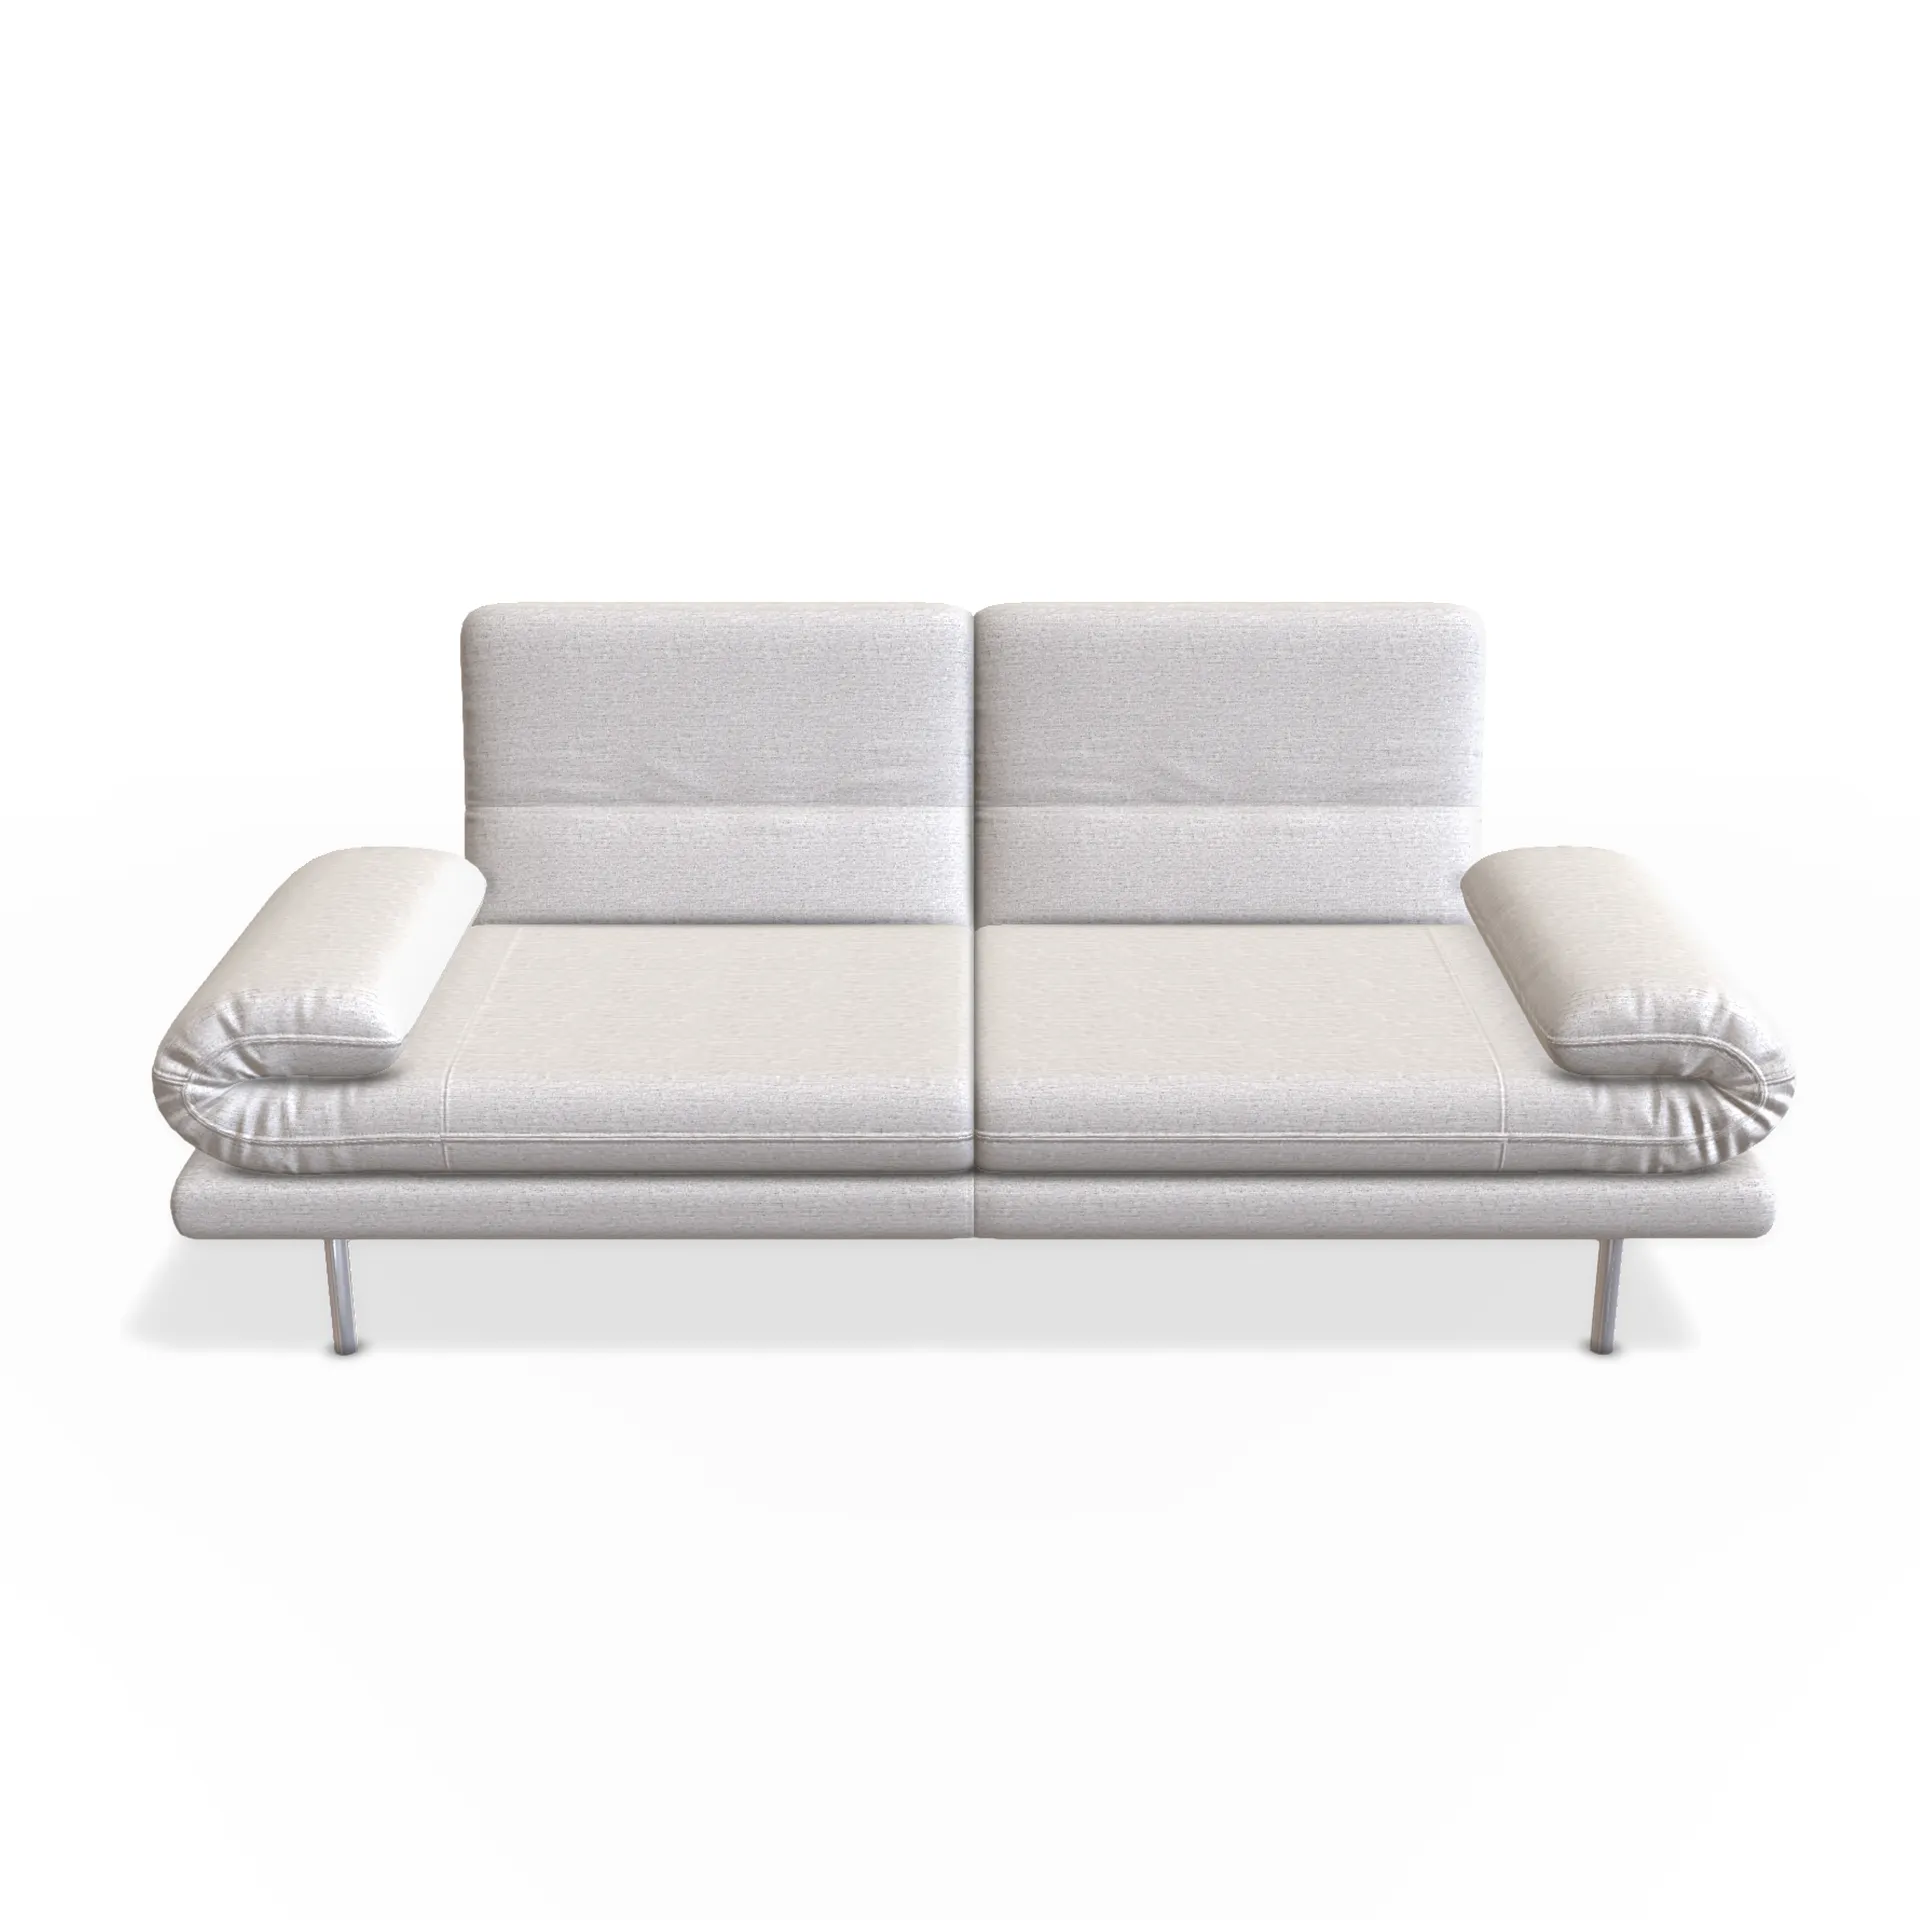 doppelte Funktion für doppelter komfort, mit dem sofa 2,5 von wima